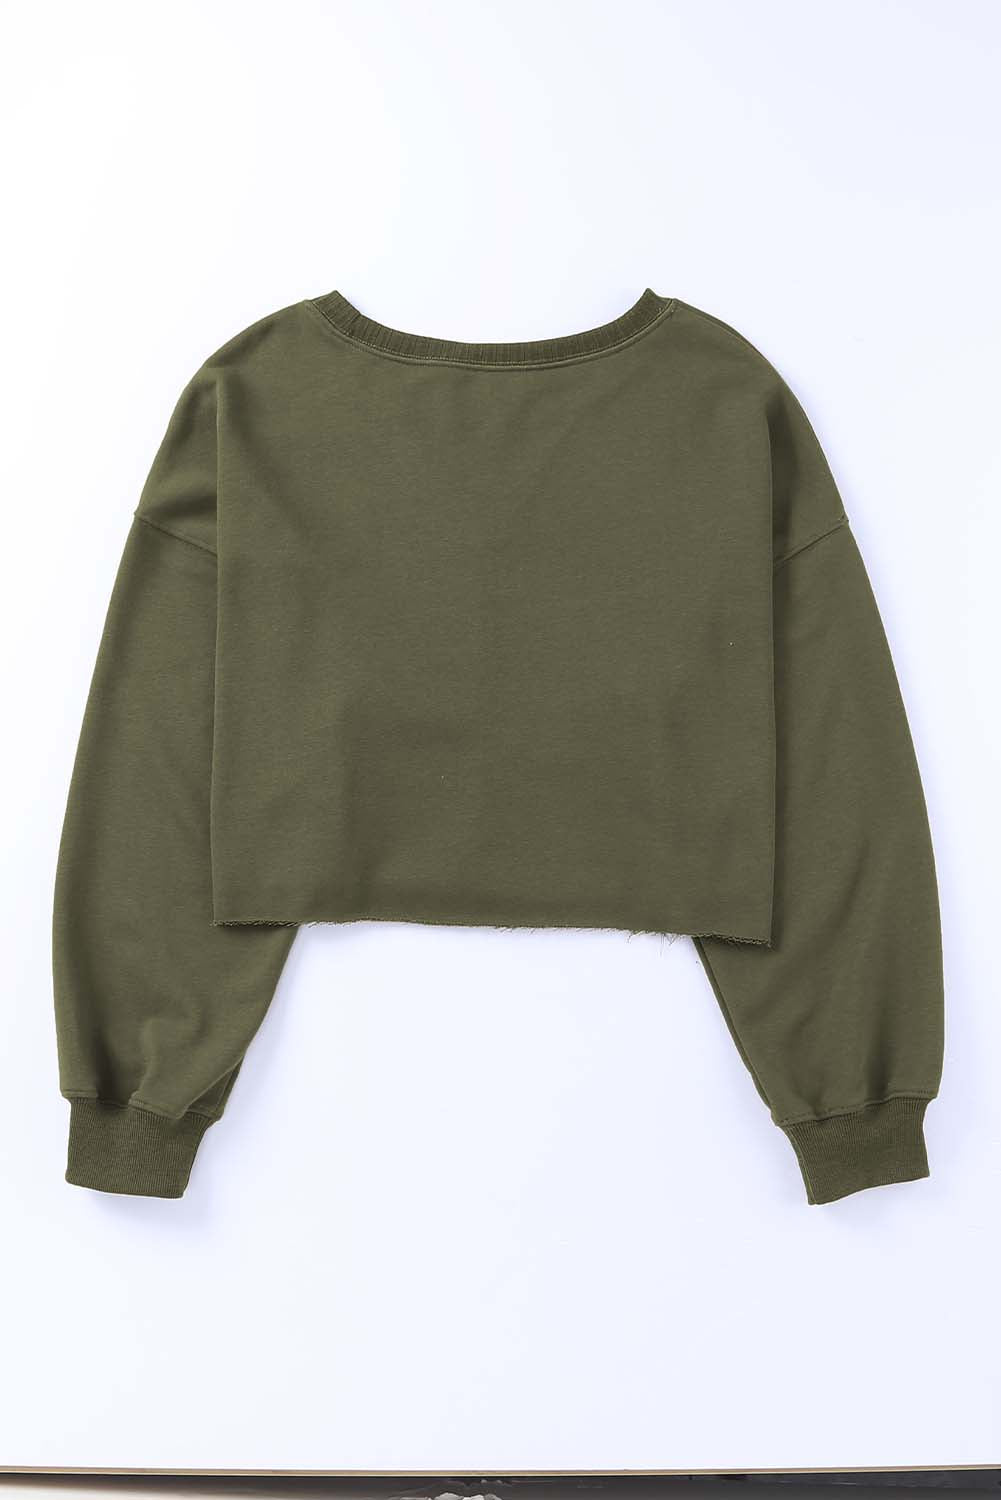 Grünes, kurzes Sweatshirt mit tief angesetzter Schulterpartie